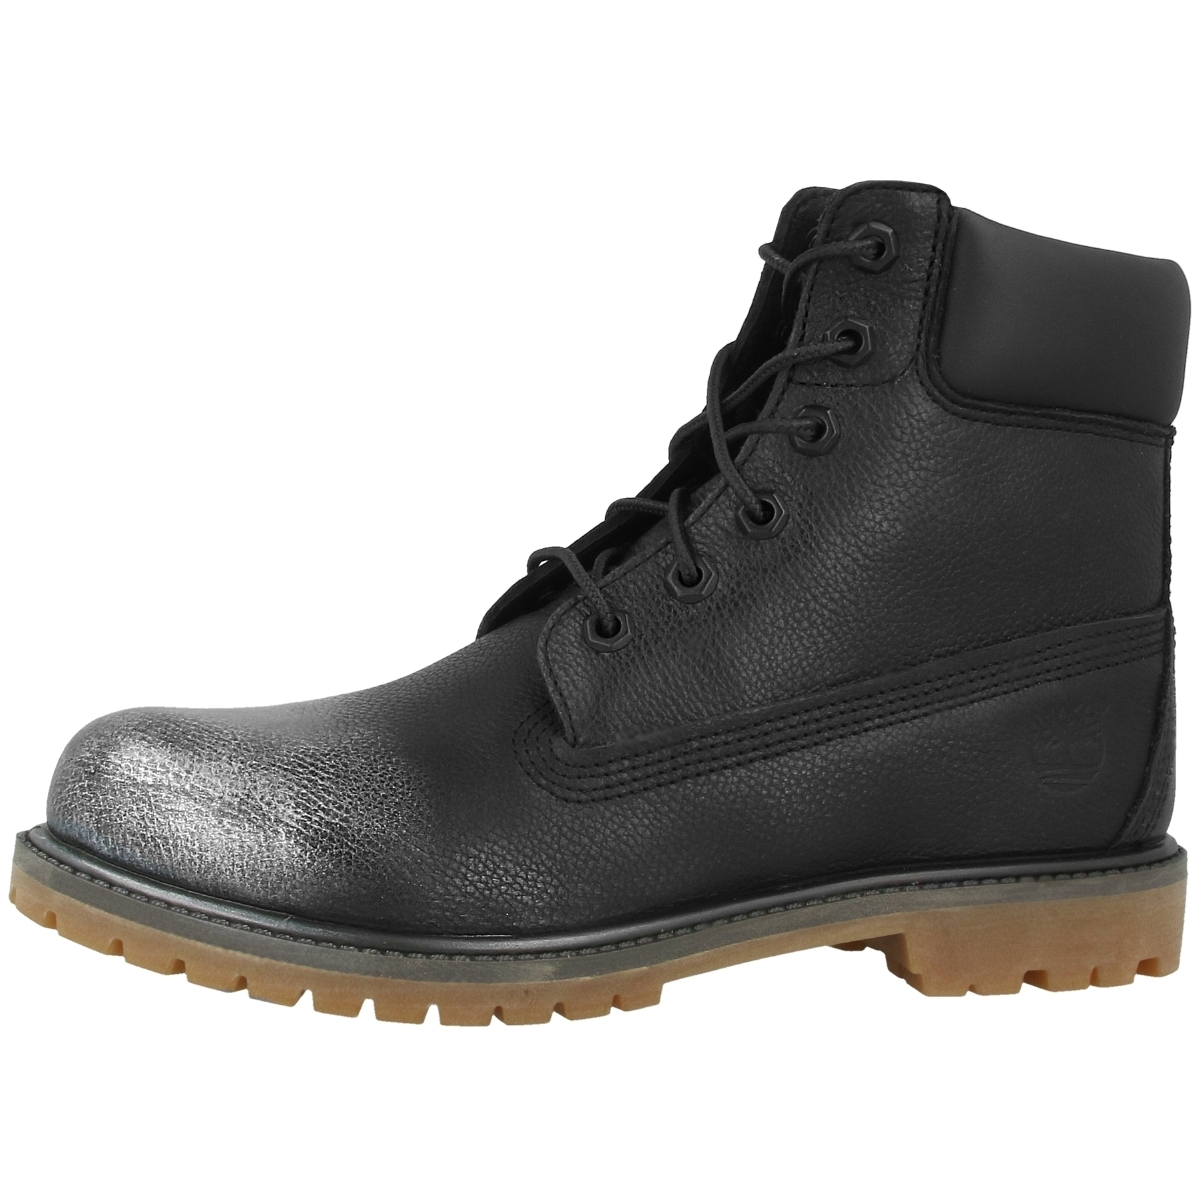 Timberland 6 Inch Premium Boots schwarz